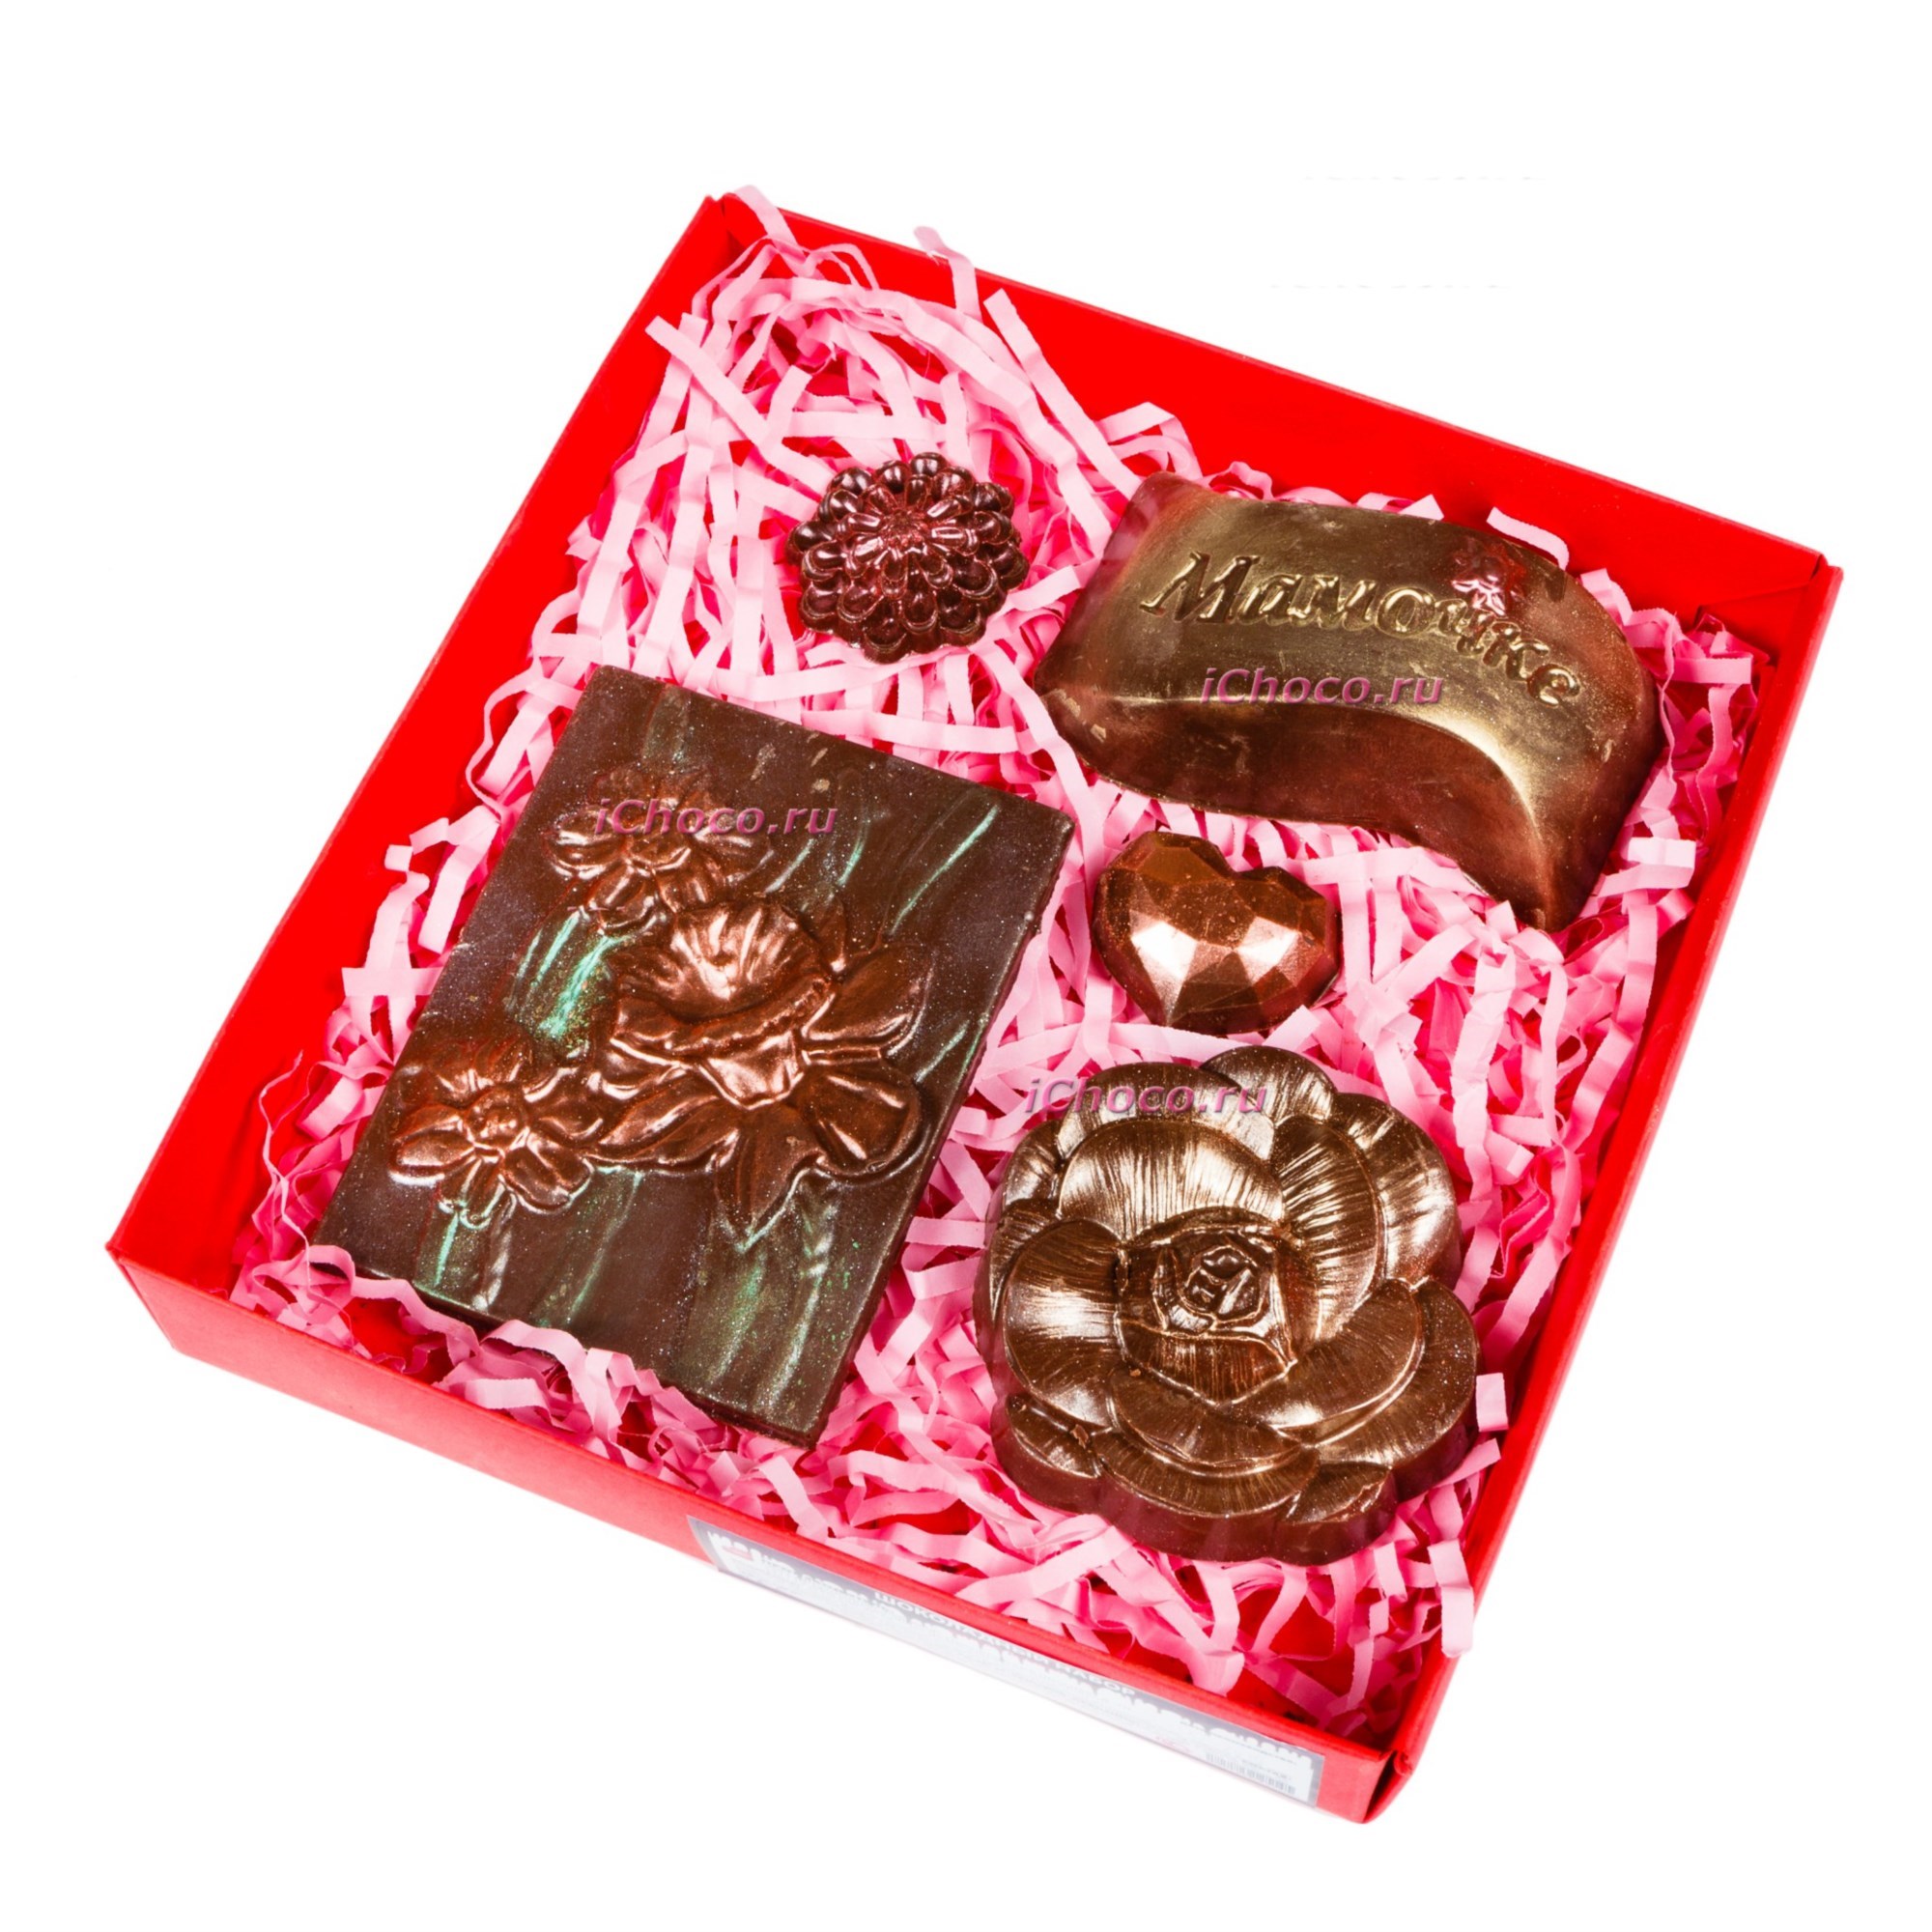 Заказать доставку шоколада. Шоколадный набор. Шоколад подарочный. Шоколадные сувениры. Шоколадные наборы для женщин.